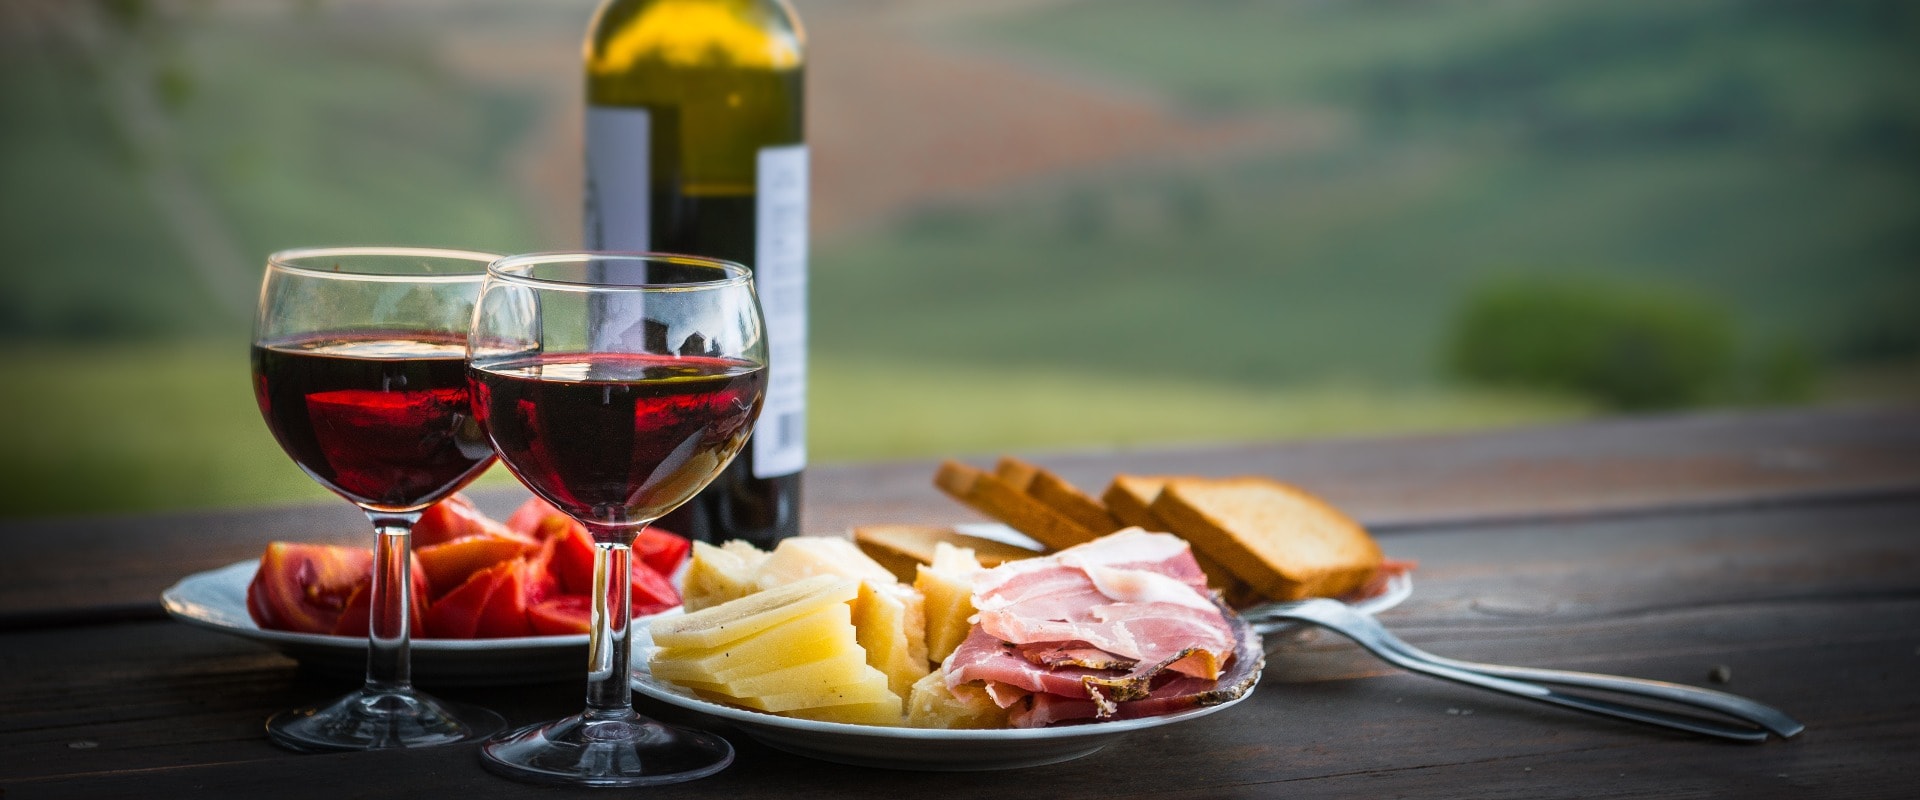 Stillleben Rotwein, Käse und Prosciutto